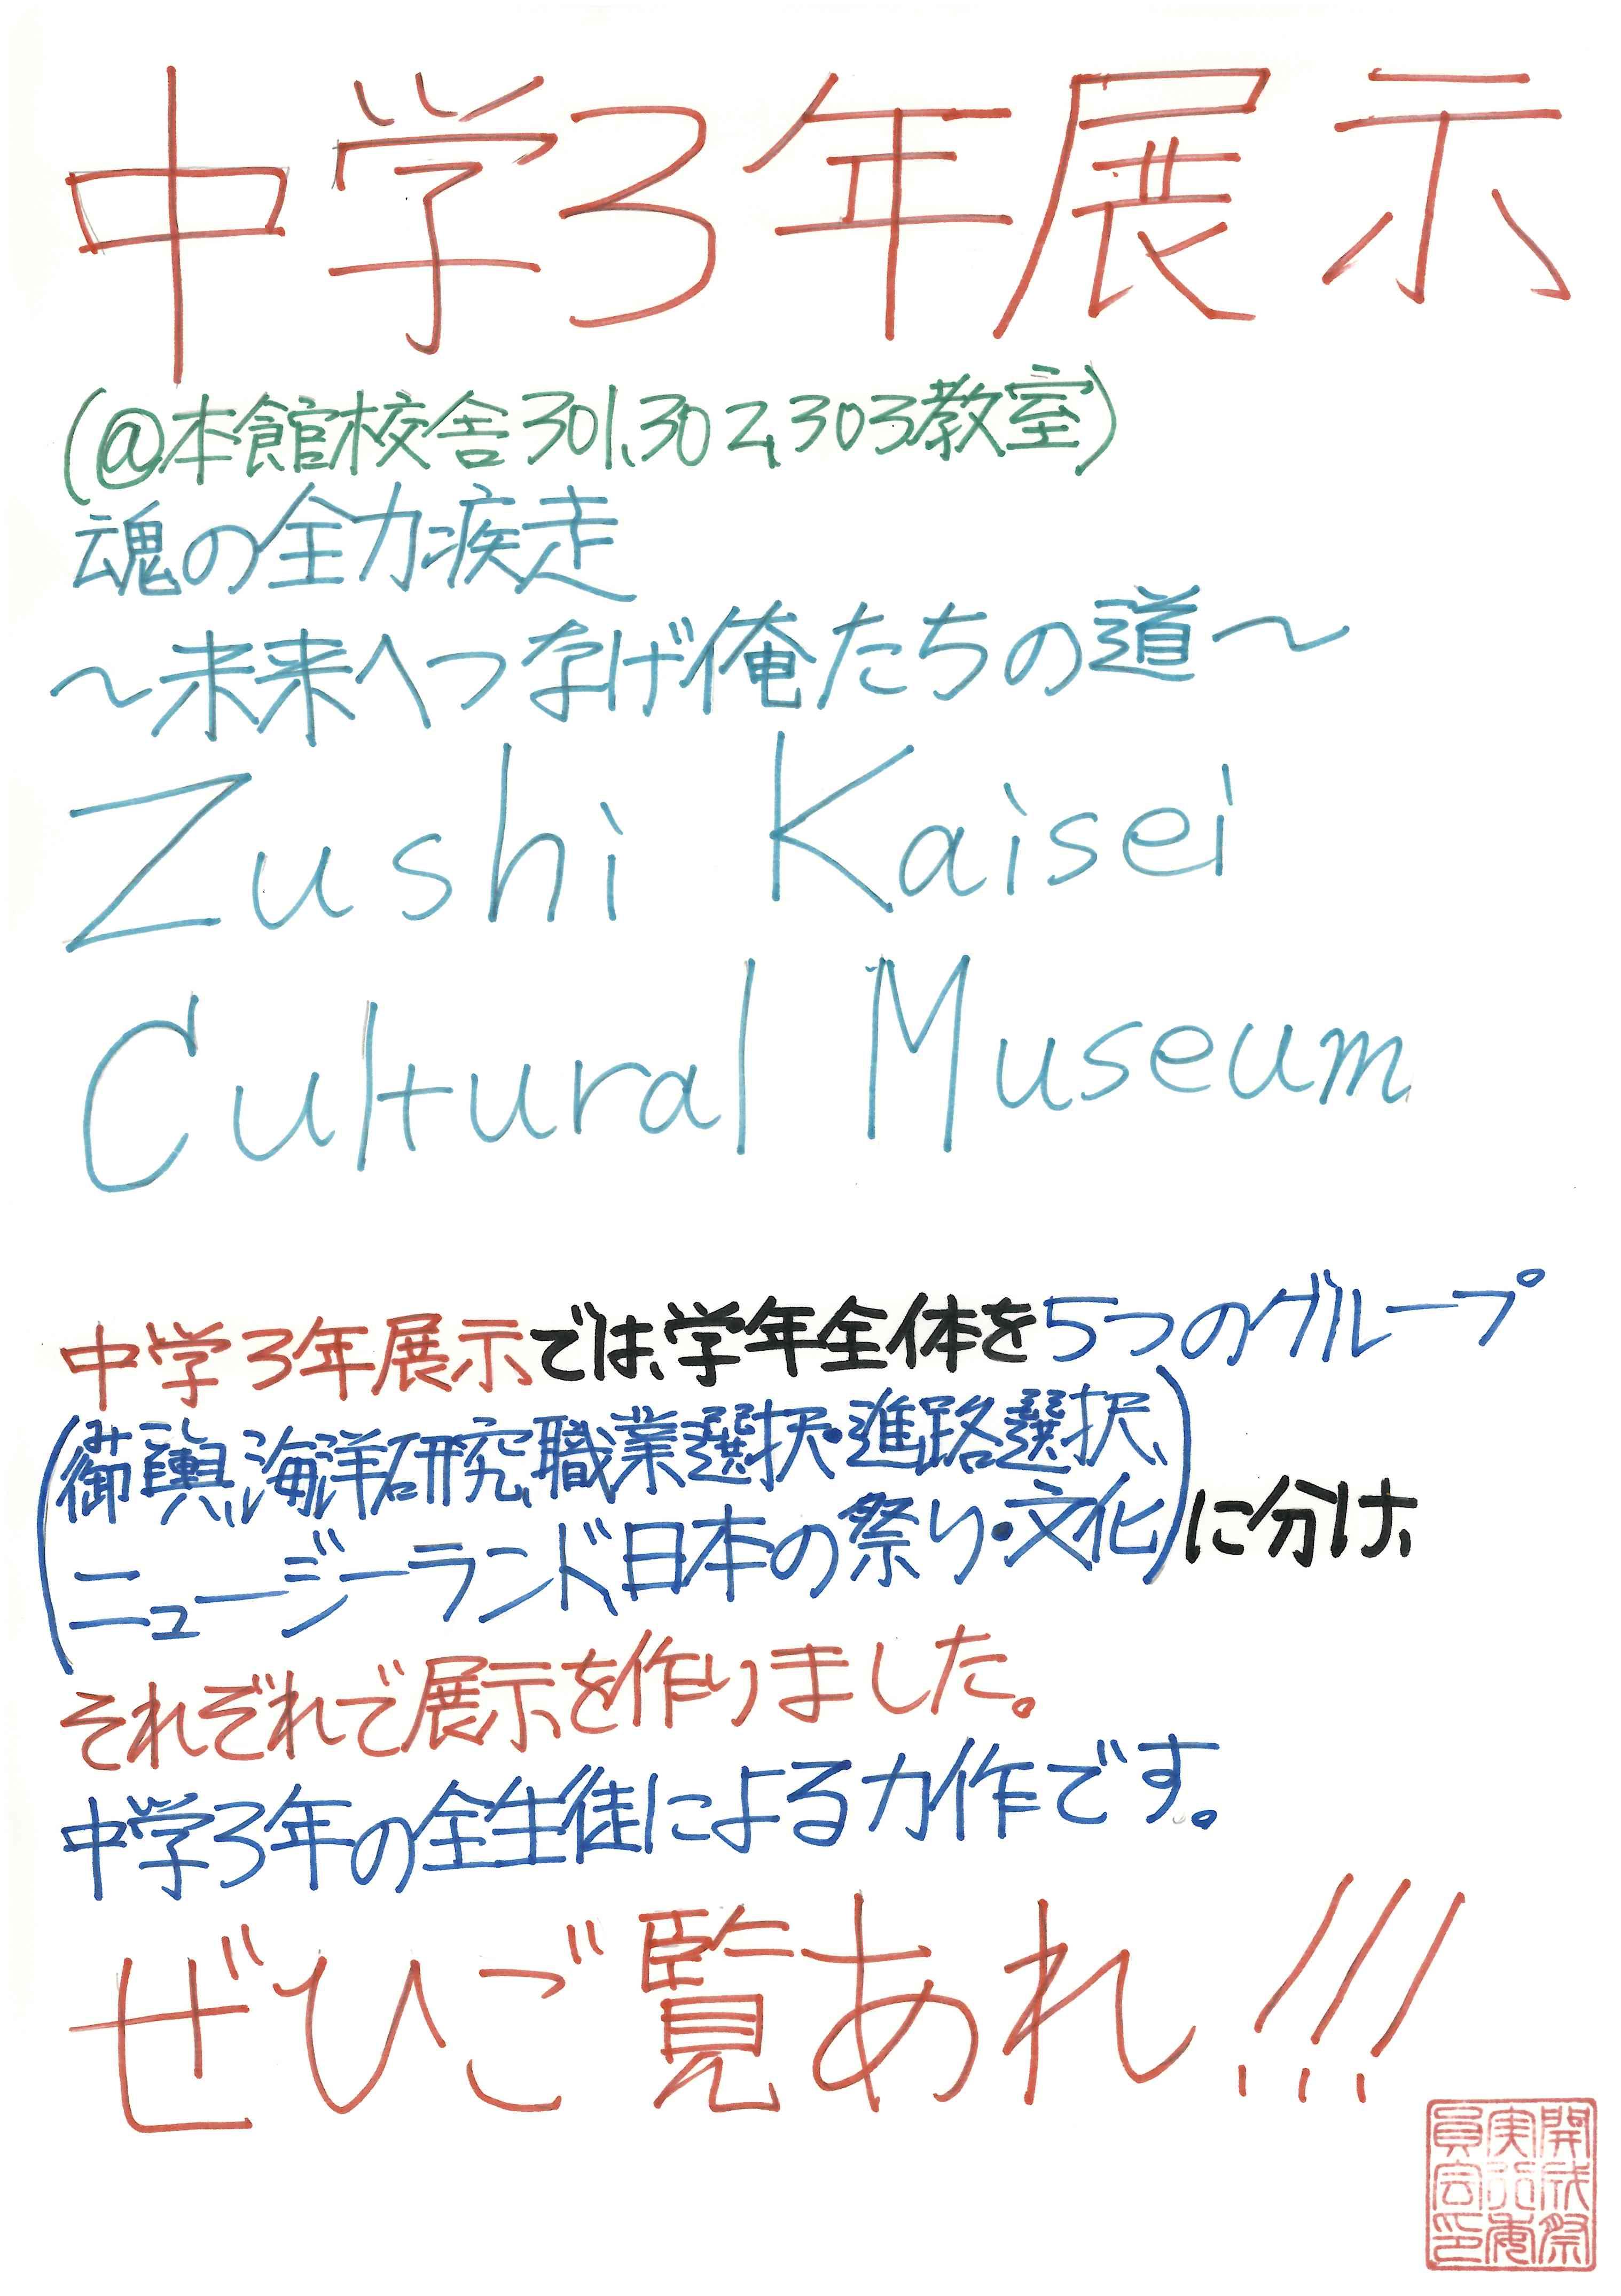 http://www.zushi-kaisei.ac.jp/news/a357bd8640baed8dfa43d57cae26e1c3546e04e1.jpg